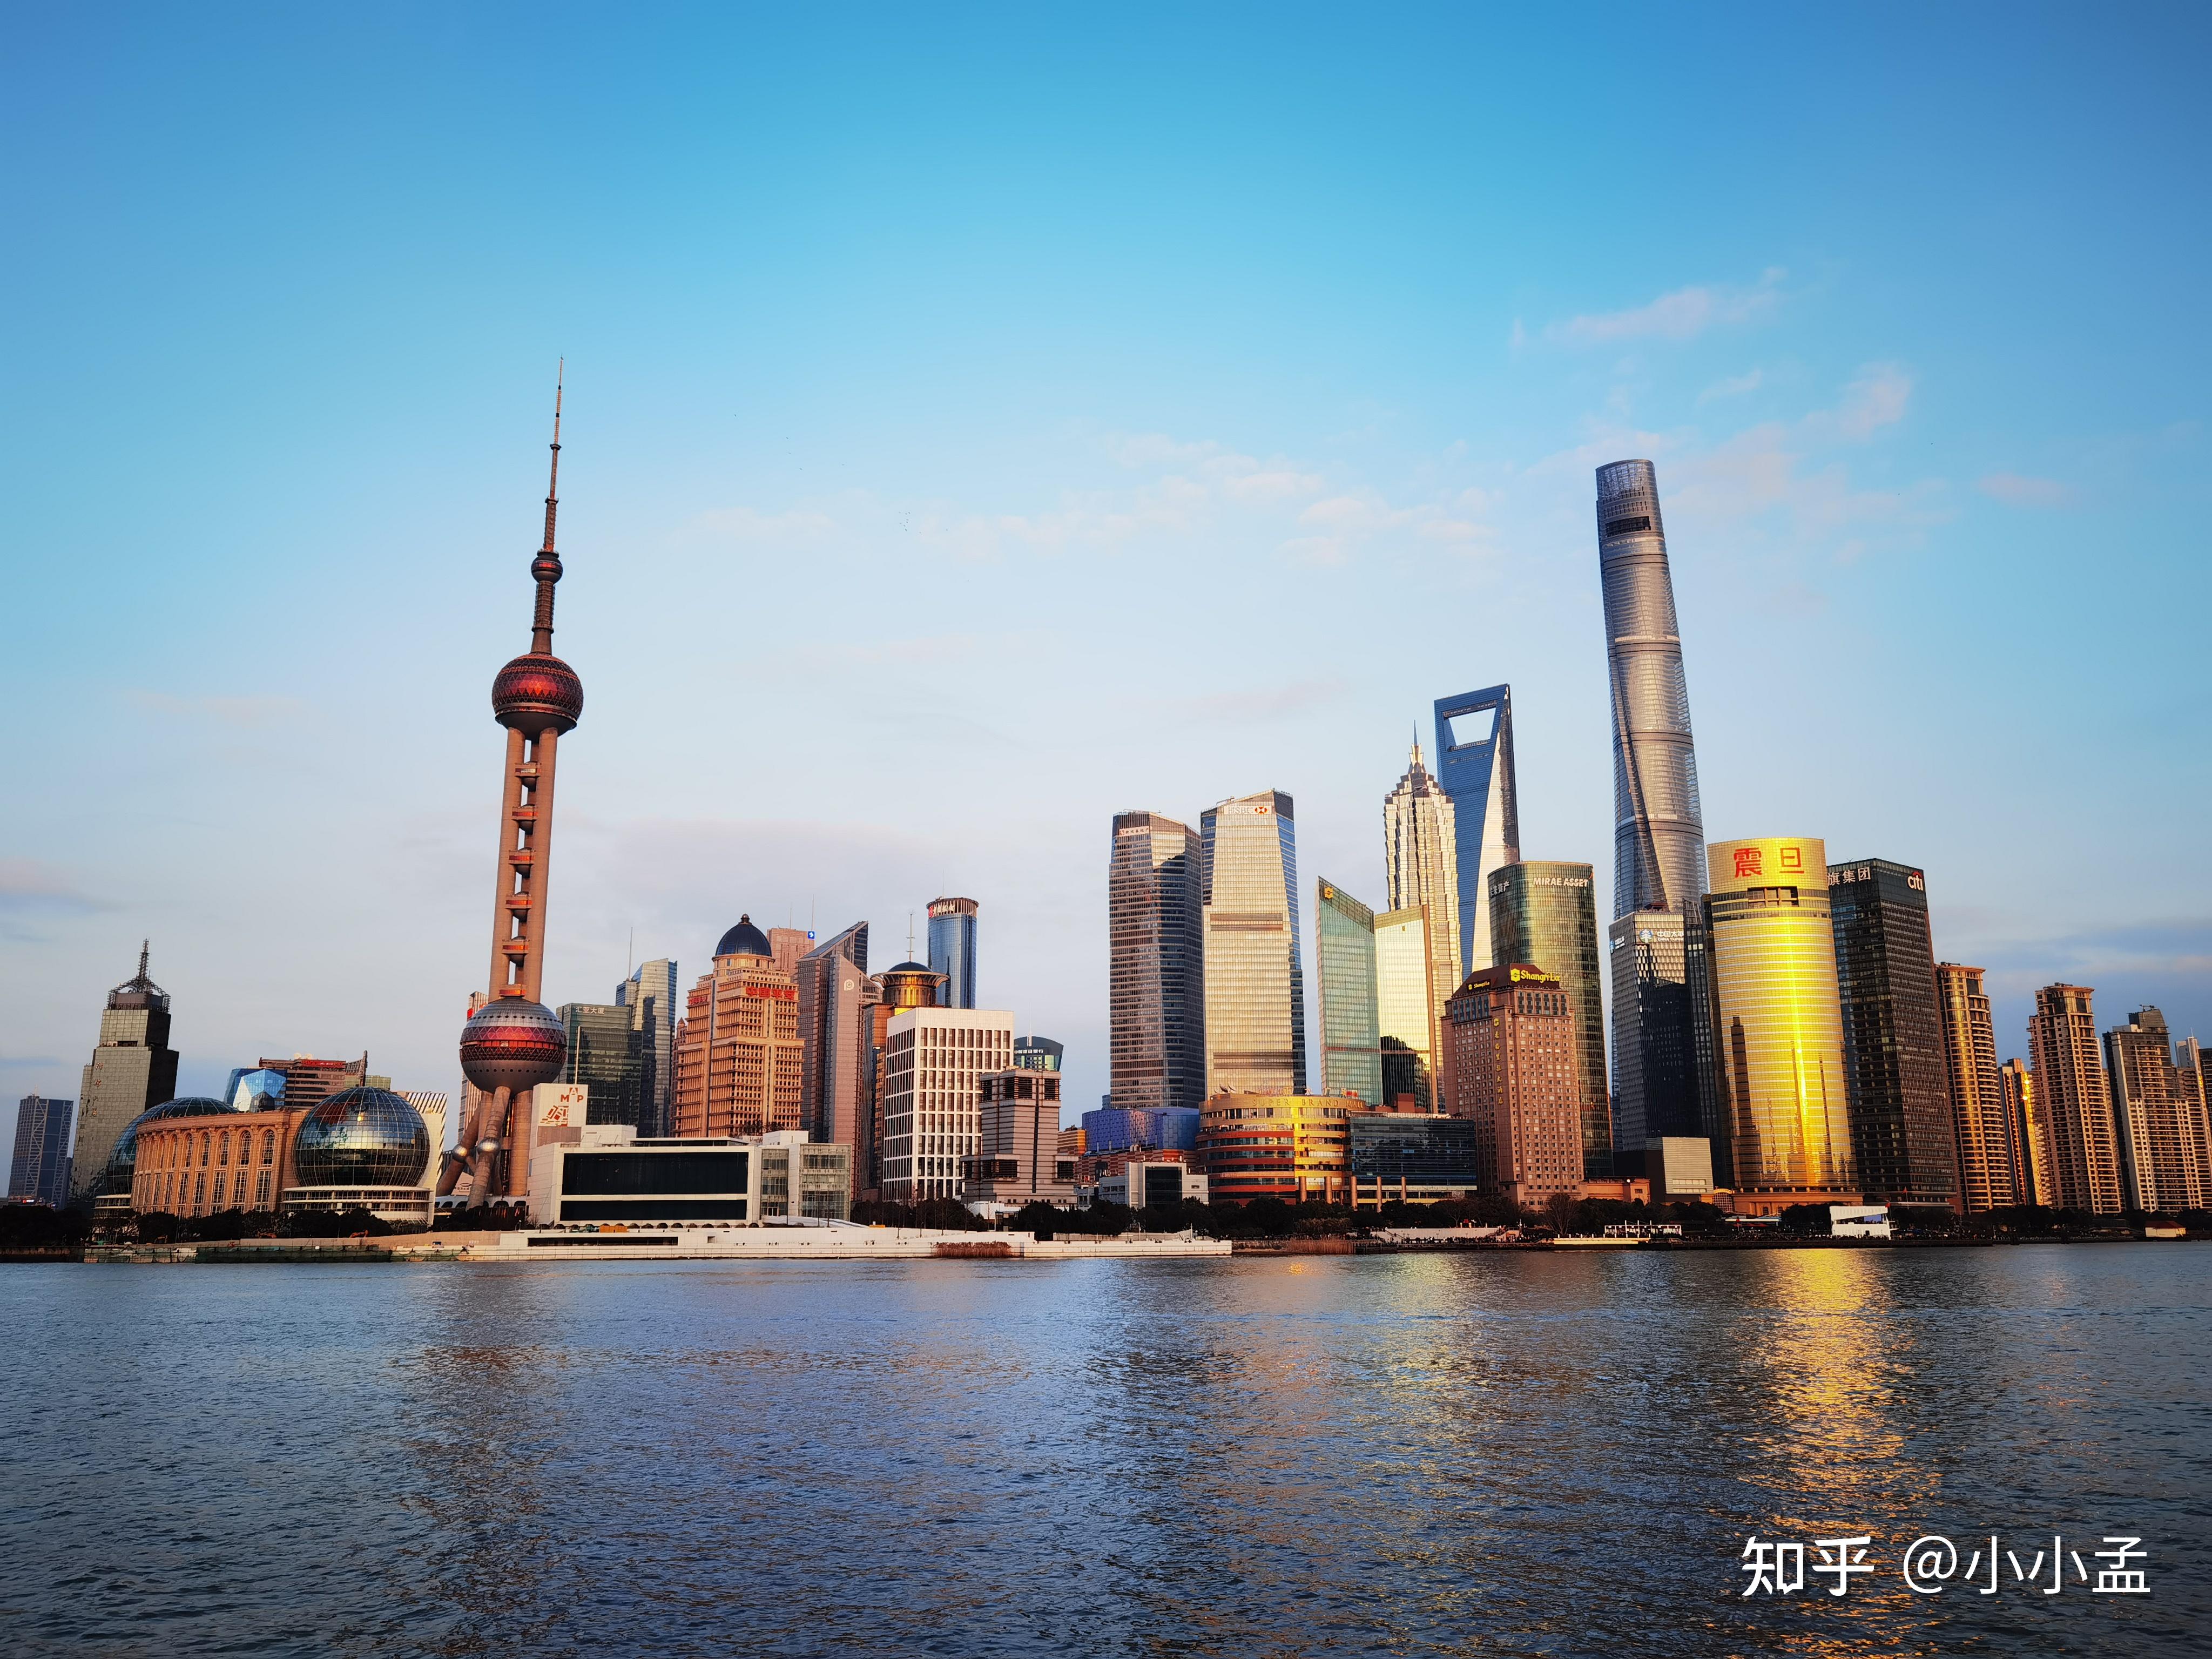 为什么 5a 级景区数量全国倒数第二的上海却是国内顶级热门旅游城市?